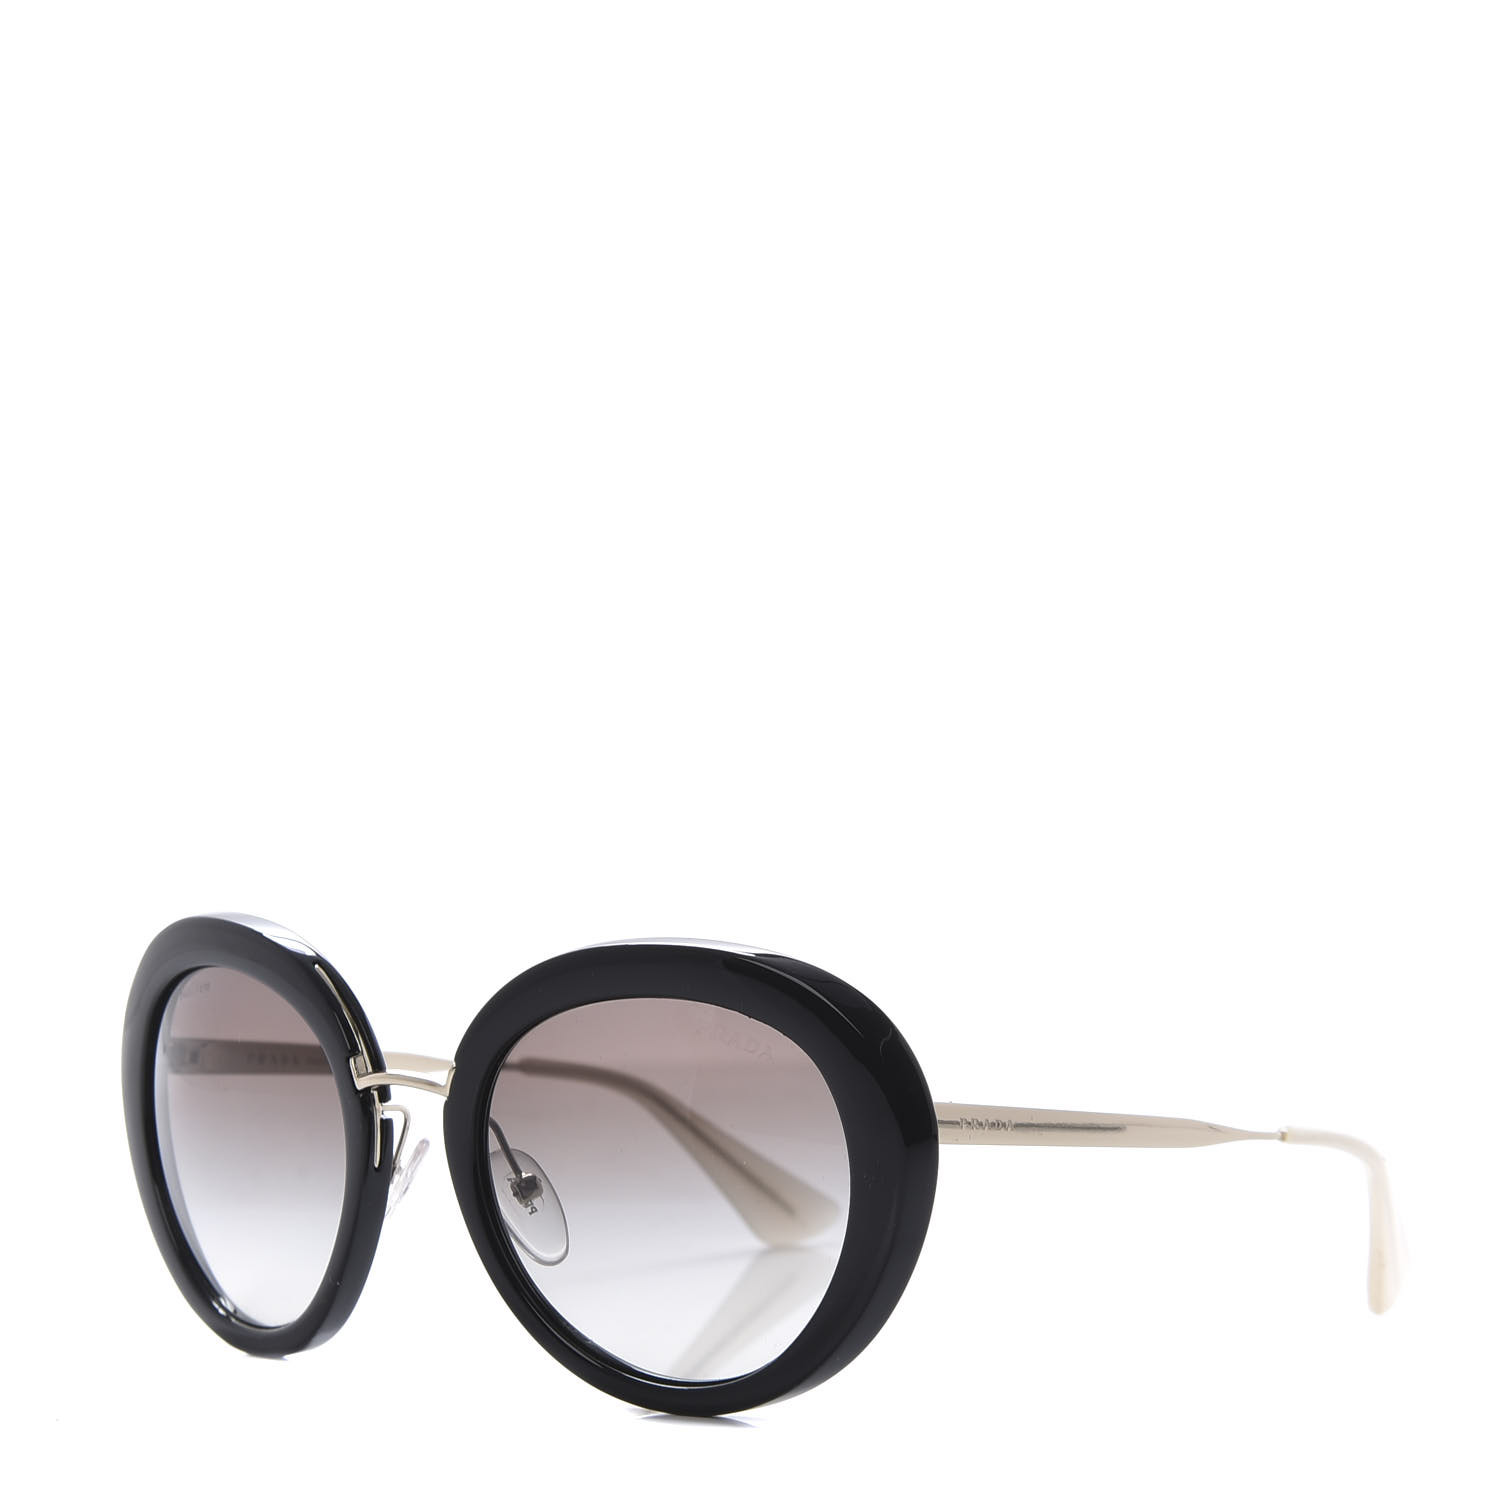 PRADA Sunglasses SPR 16Q Black 627193 